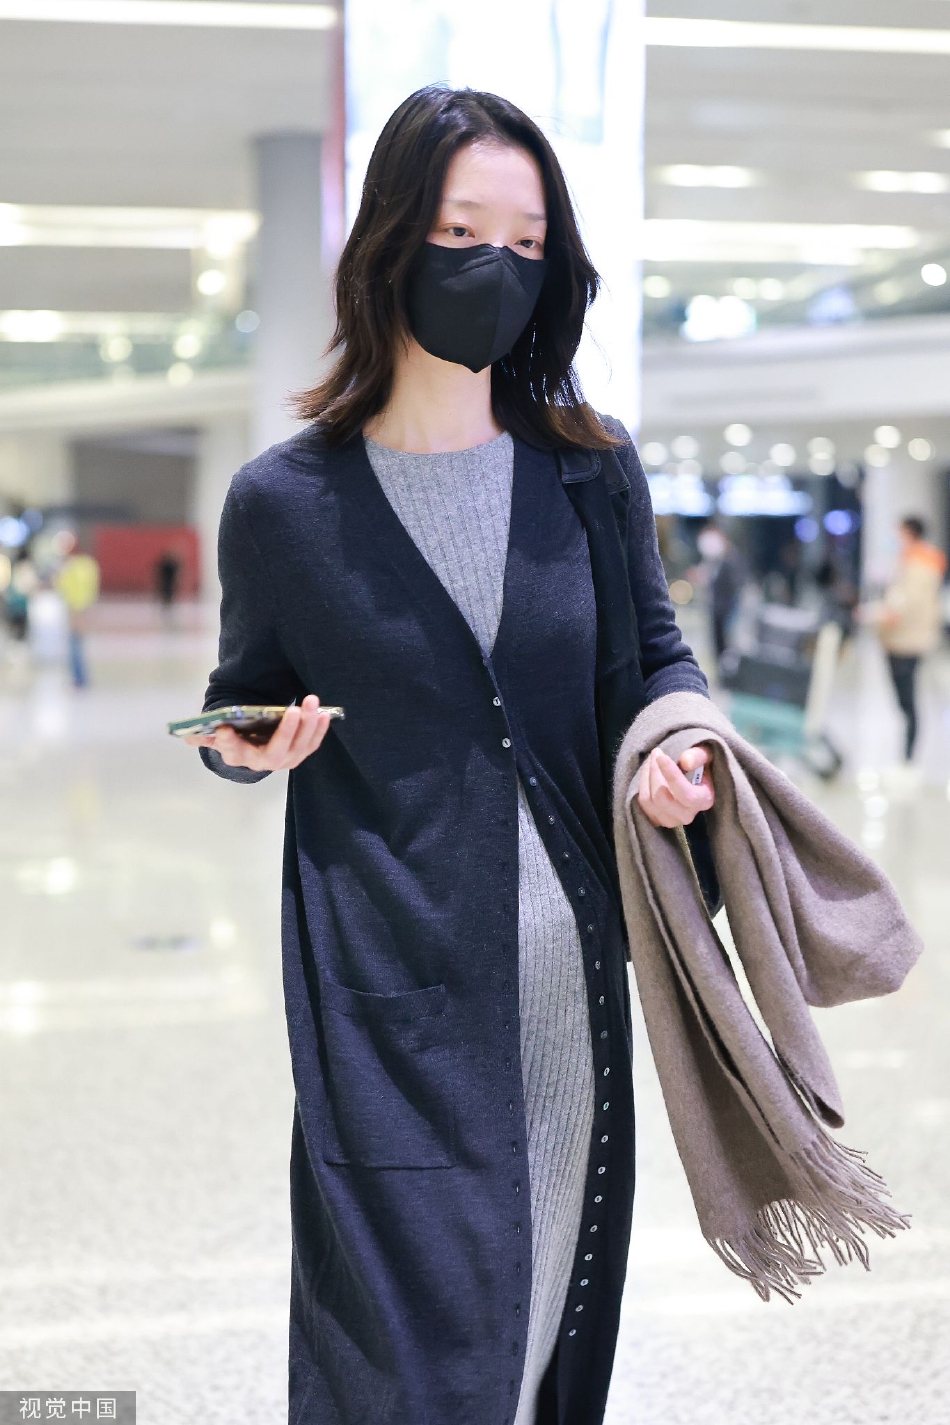 组图:杜鹃穿长款开衫抵达机场 造型简约时尚身材纤细气质佳